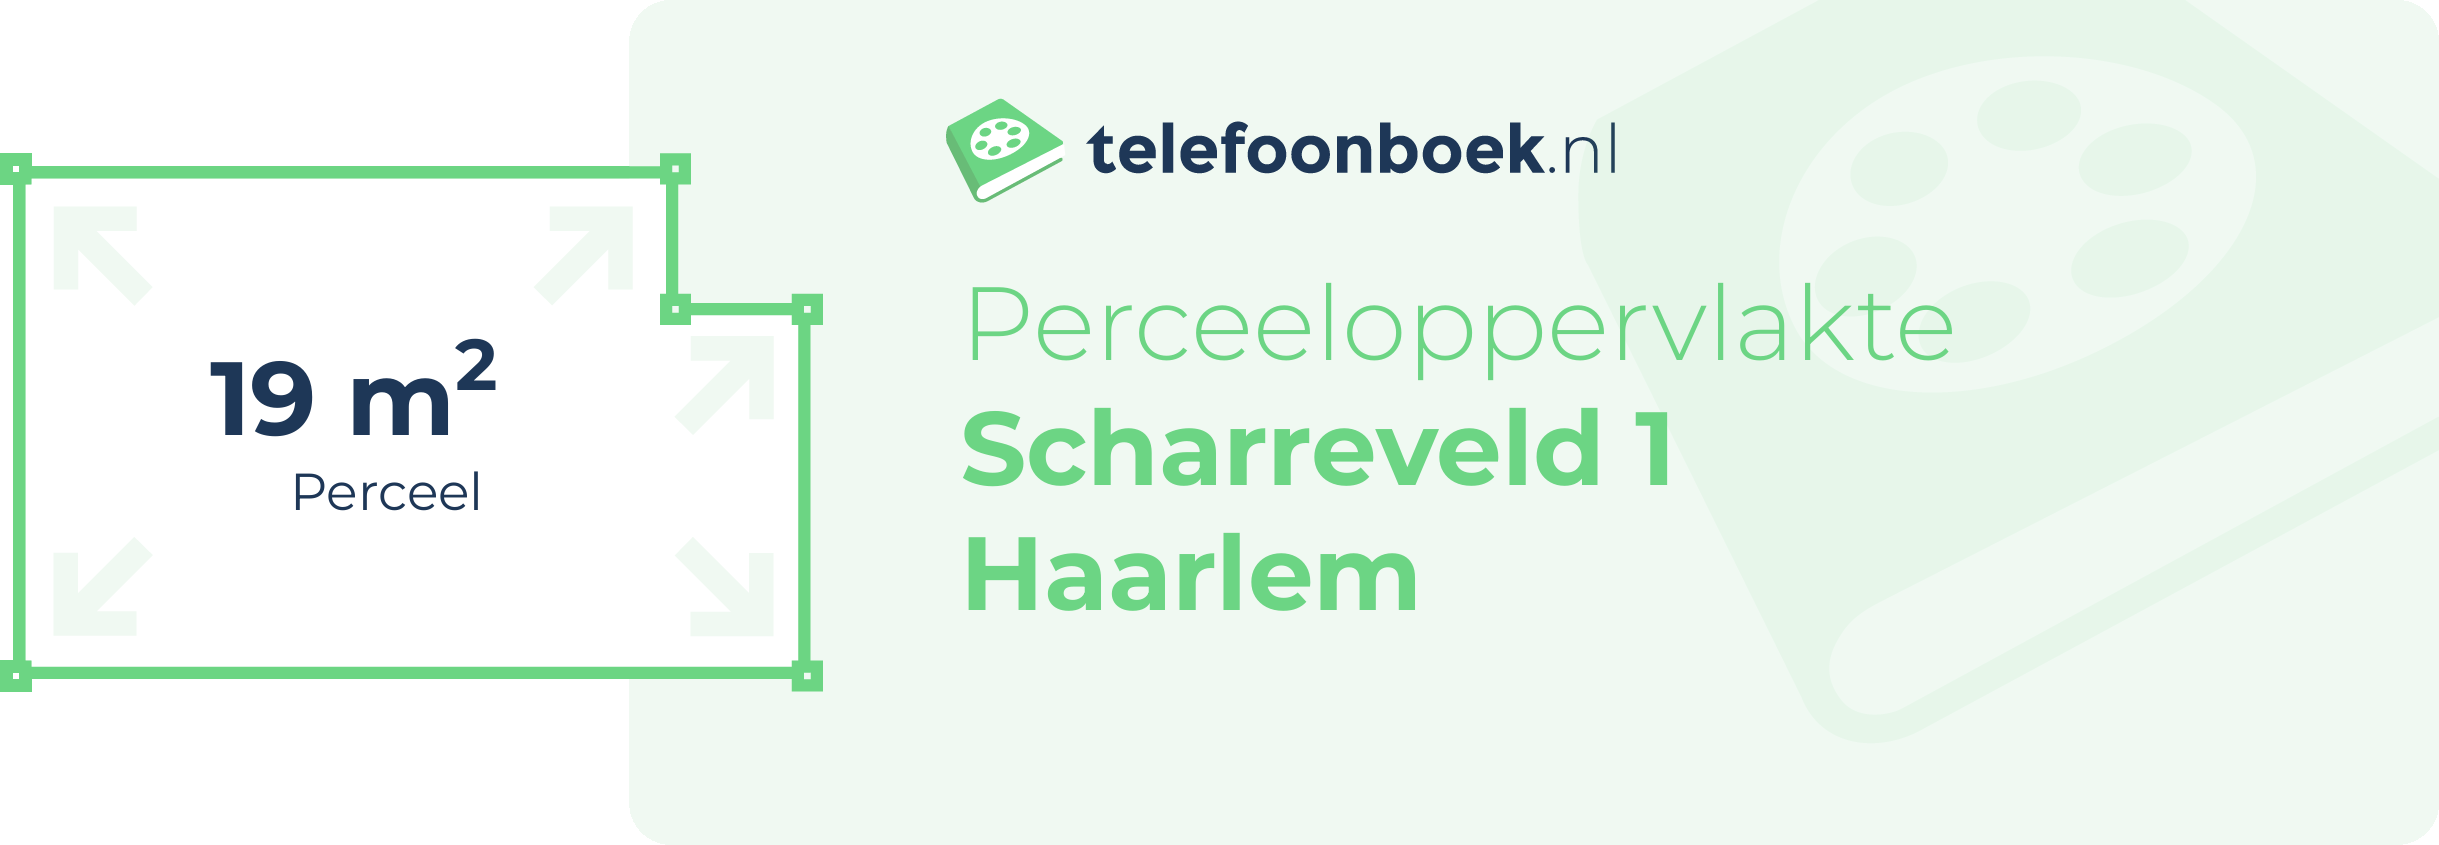 Perceeloppervlakte Scharreveld 1 Haarlem